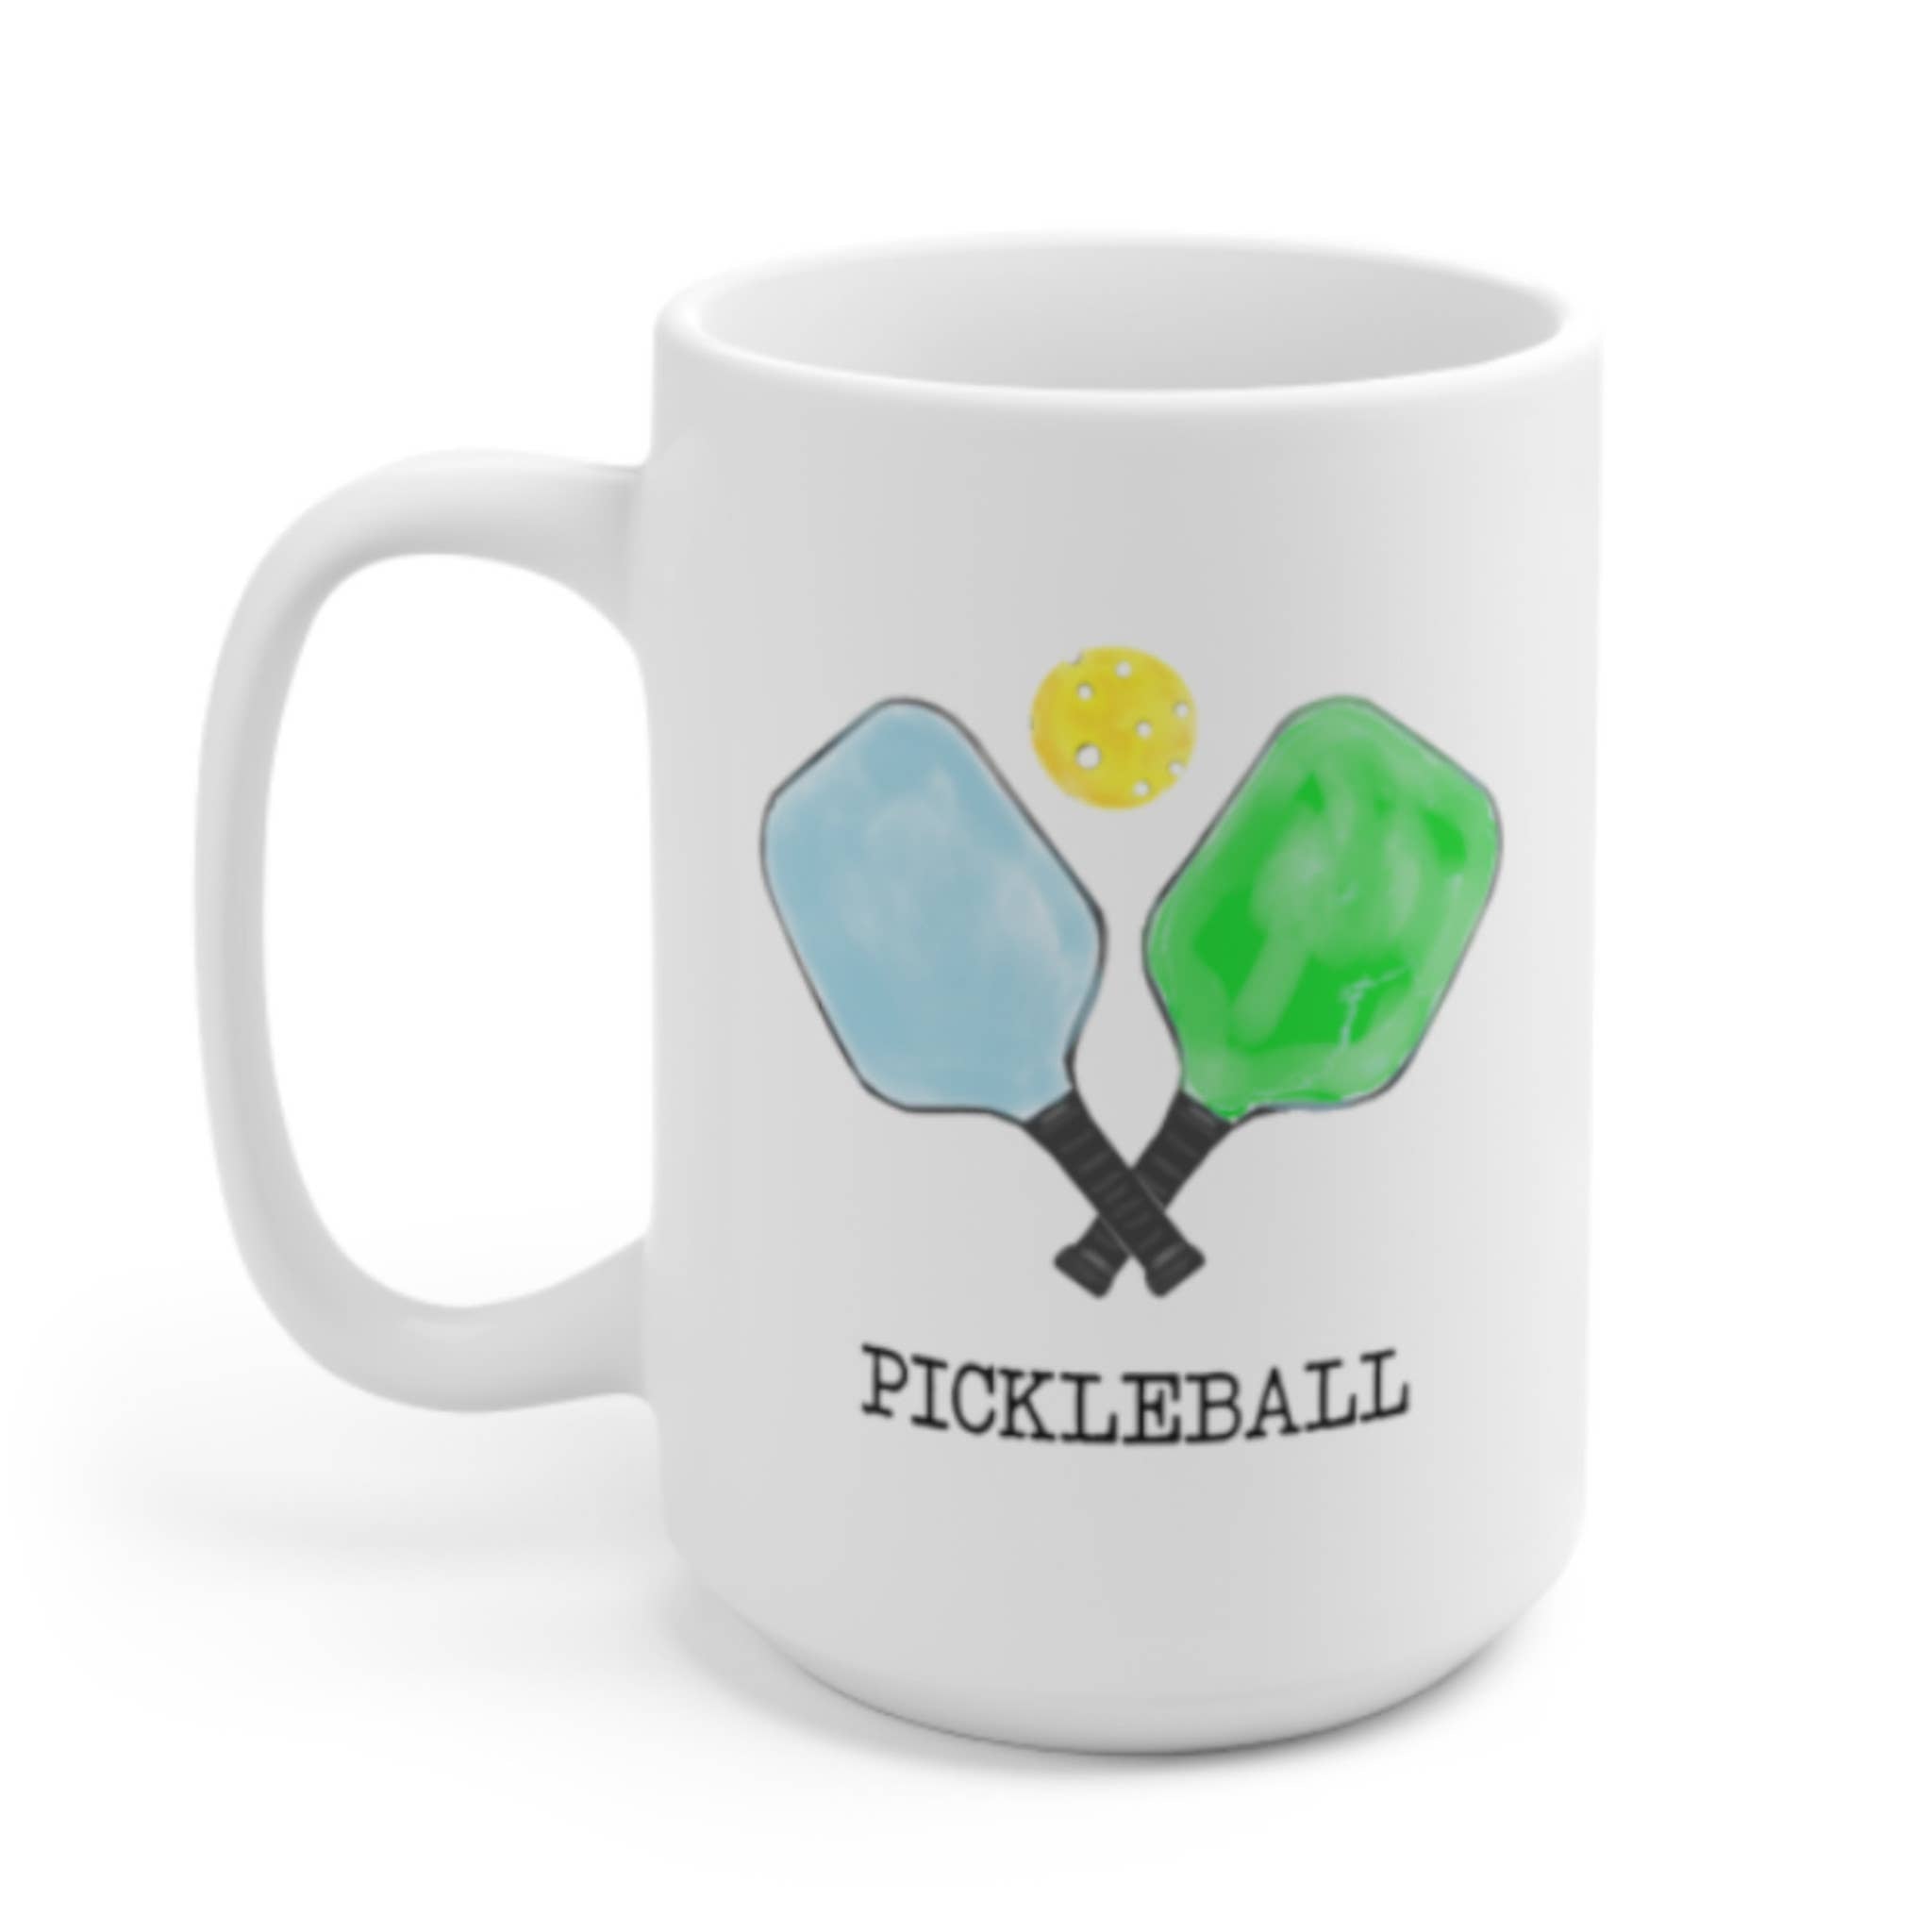 Pickleball Ceramic Mug